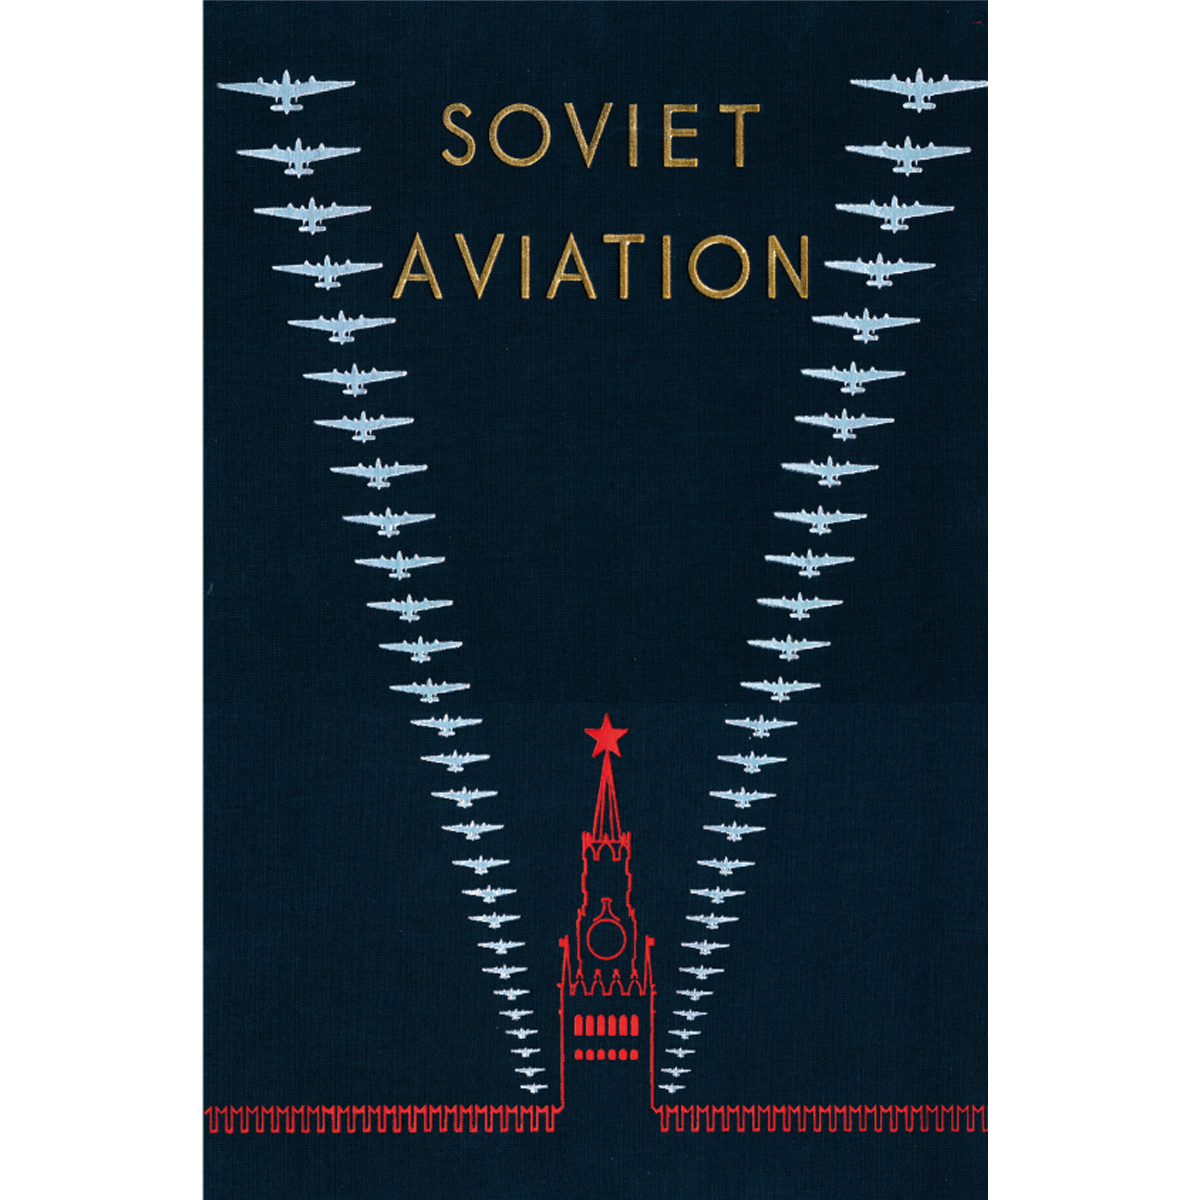 Soviet Aviation